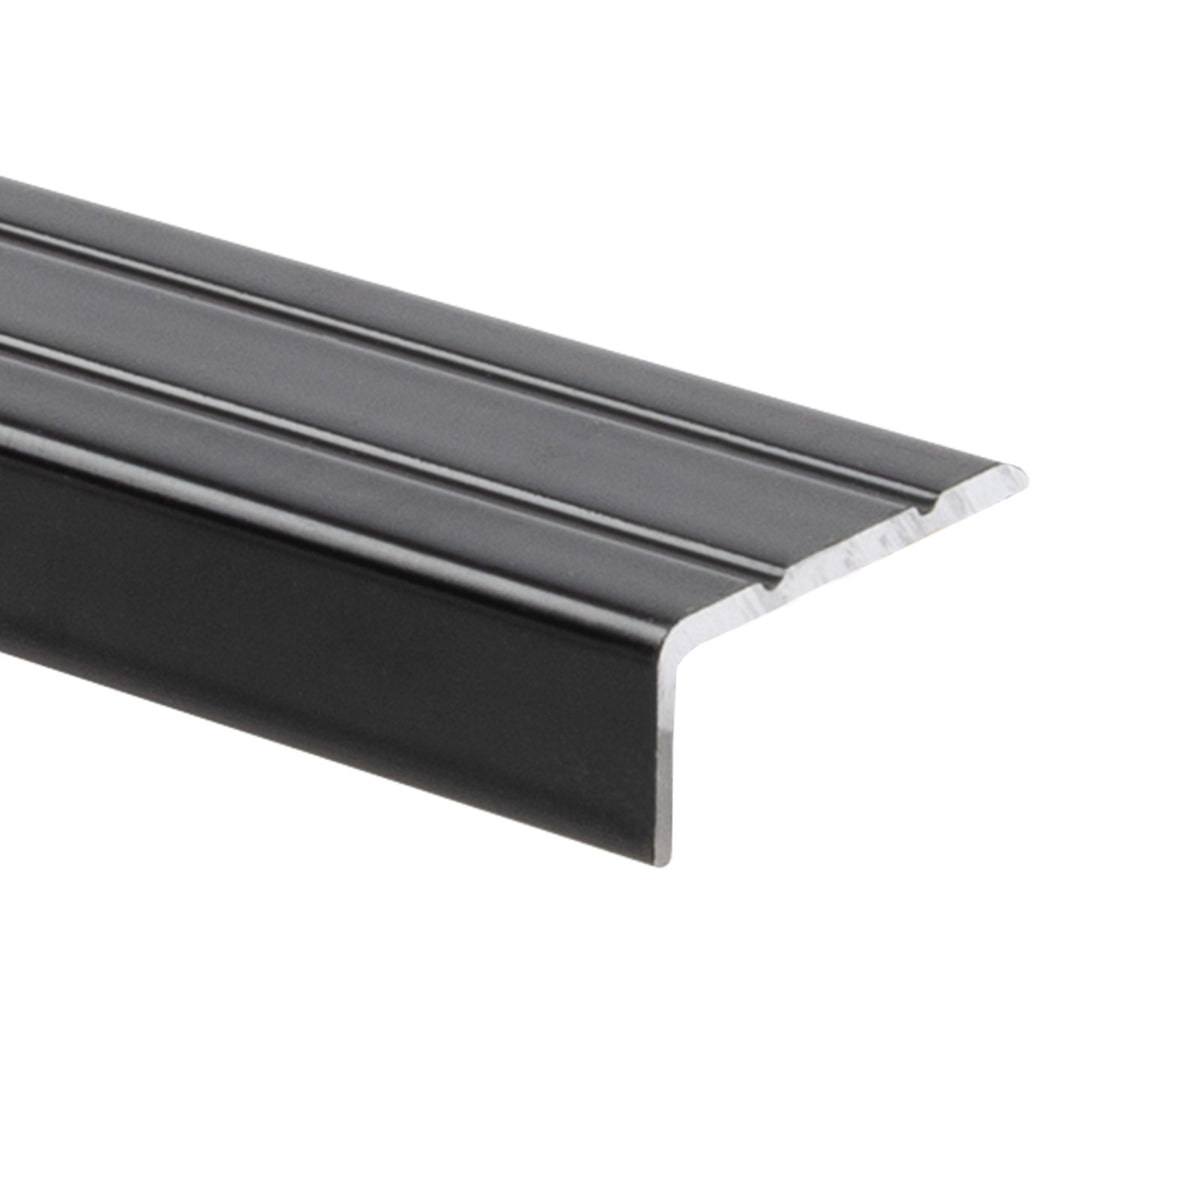 Winkelprofil | Für Treppenstufen & Absätze | Aluminium | 24,5 x 10 mm